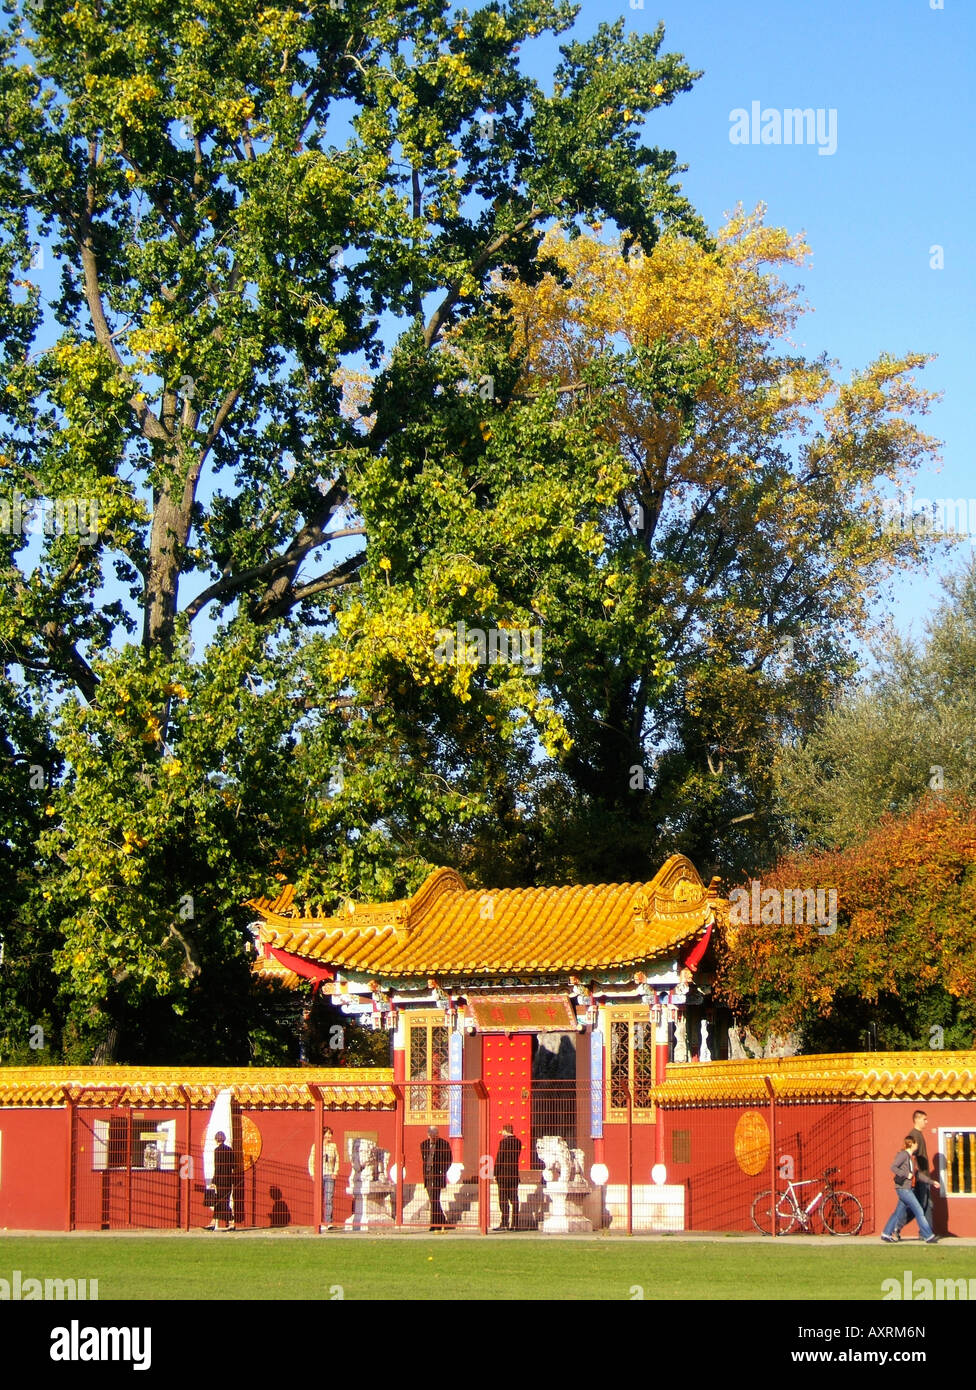 Switzerland Zuerich china garden near lake autumn Schweiz Zuerich China Garten beim See im Herbst Stock Photo